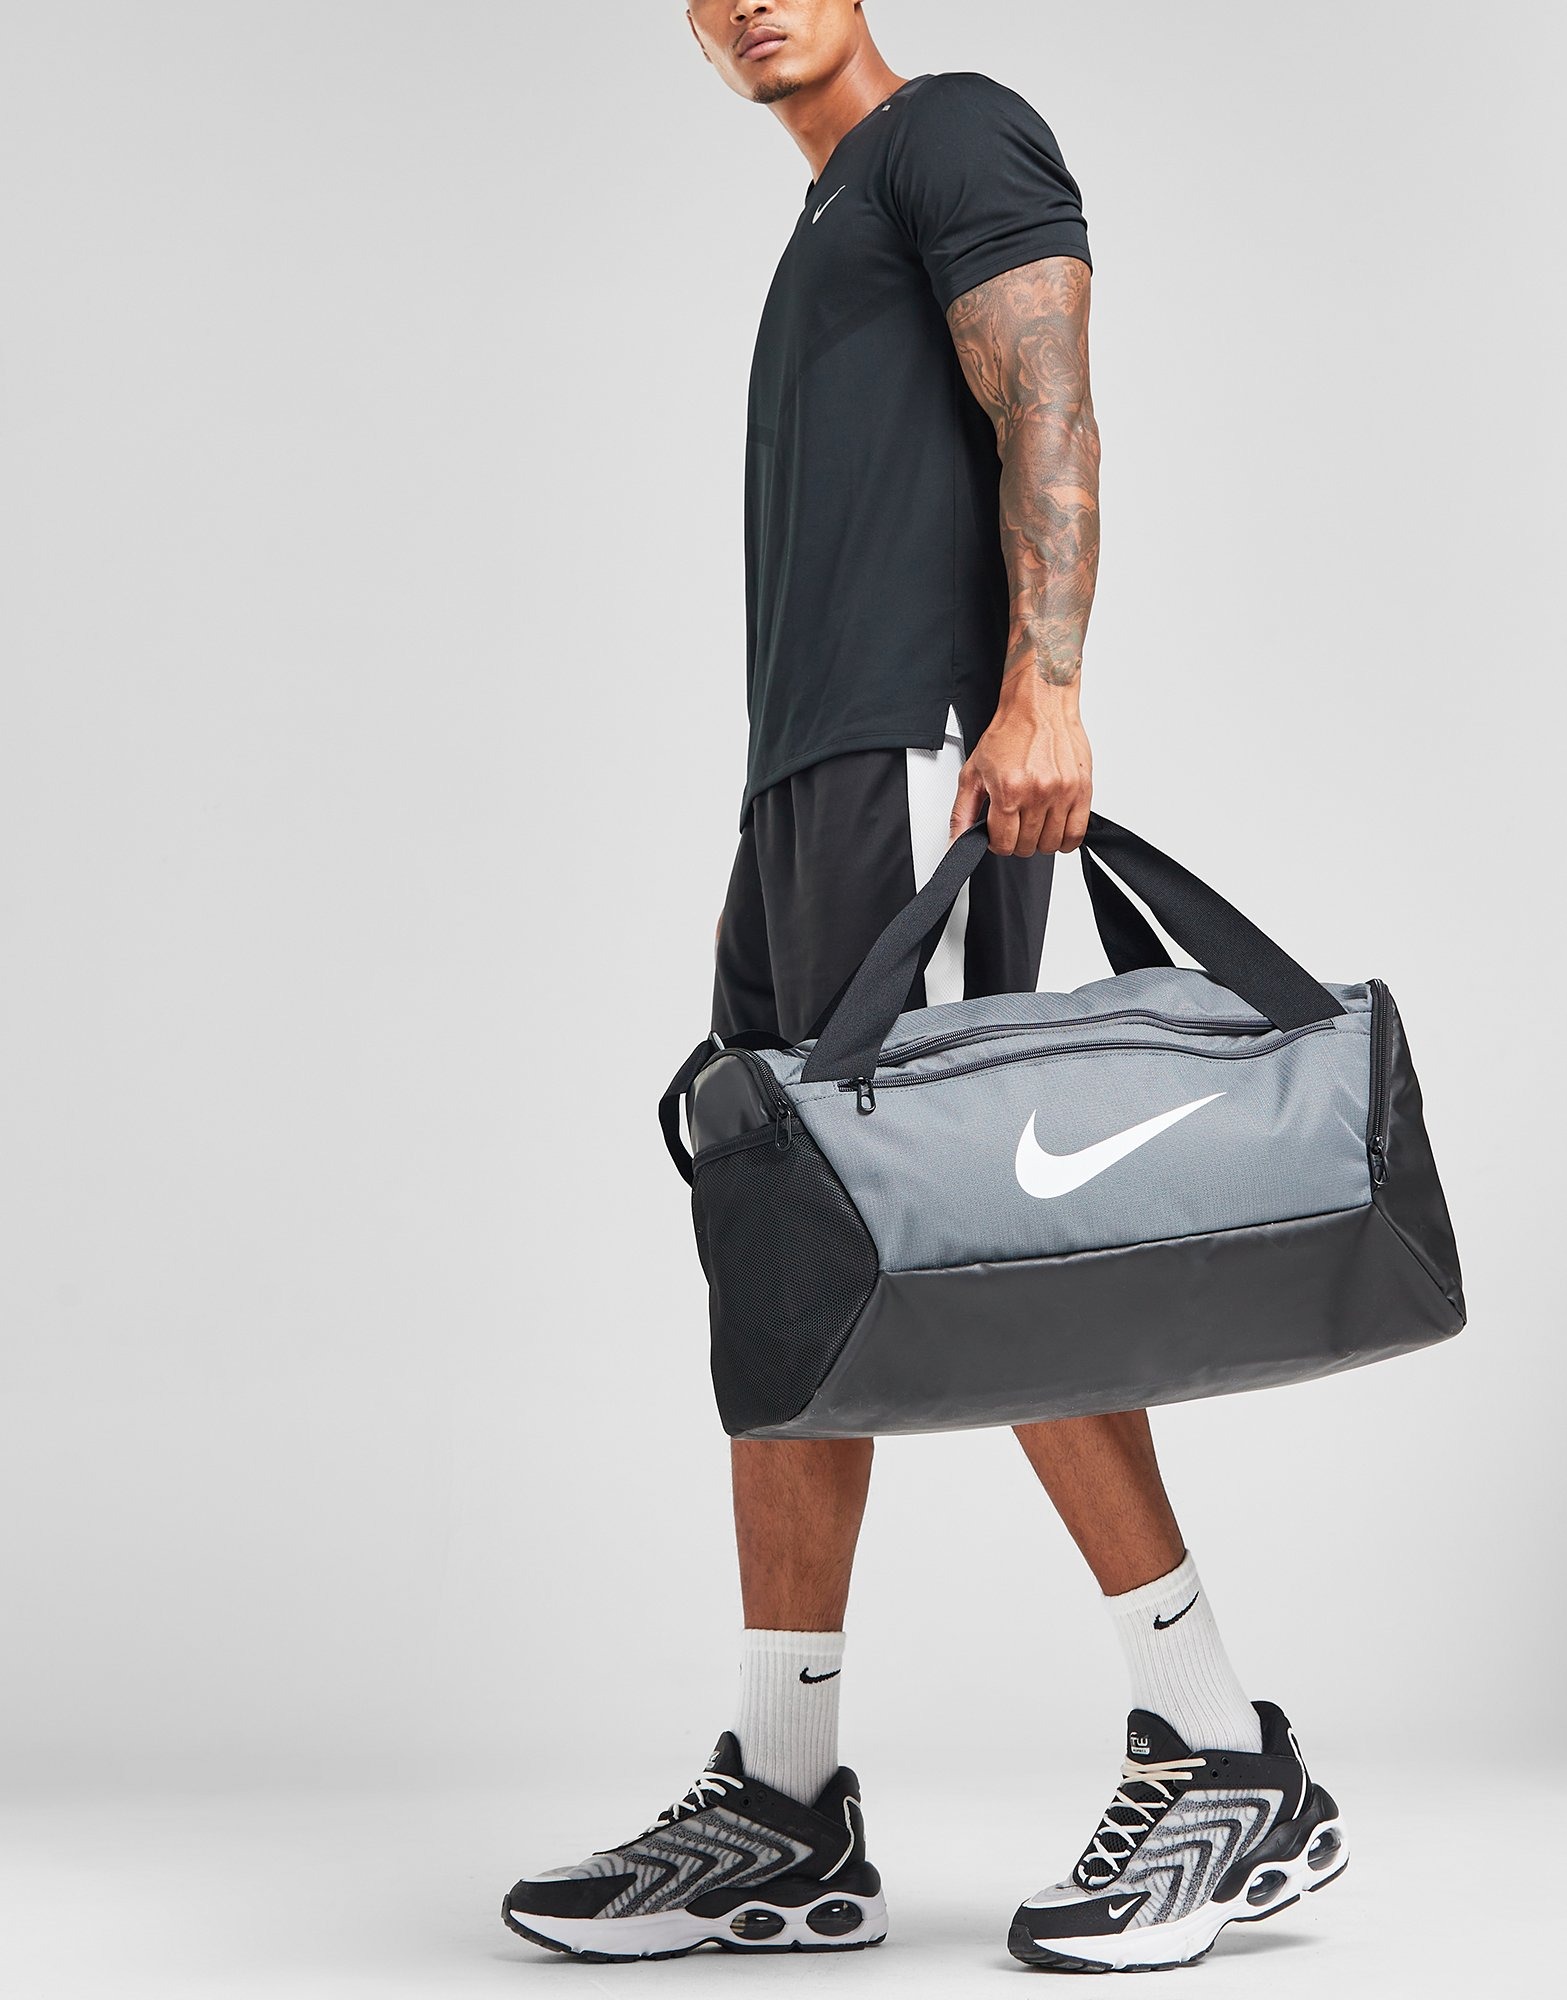 Grey Nike Small Brasilia Bag | JD Sports Global - JD Sports Global